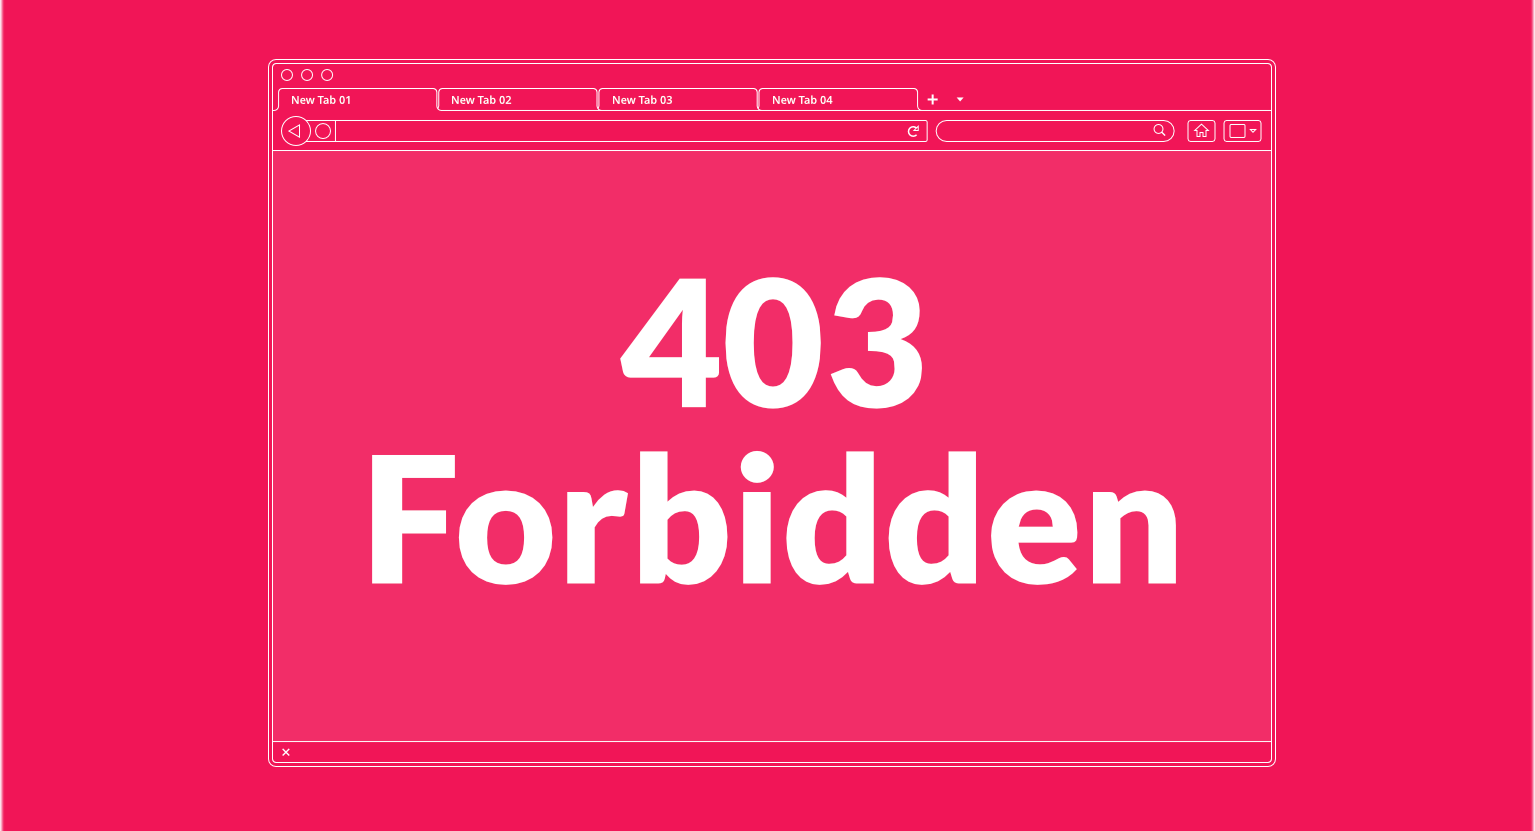 Hướng dẫn xử lý lỗi 403 khi vào admin WordPress (Forbidden)